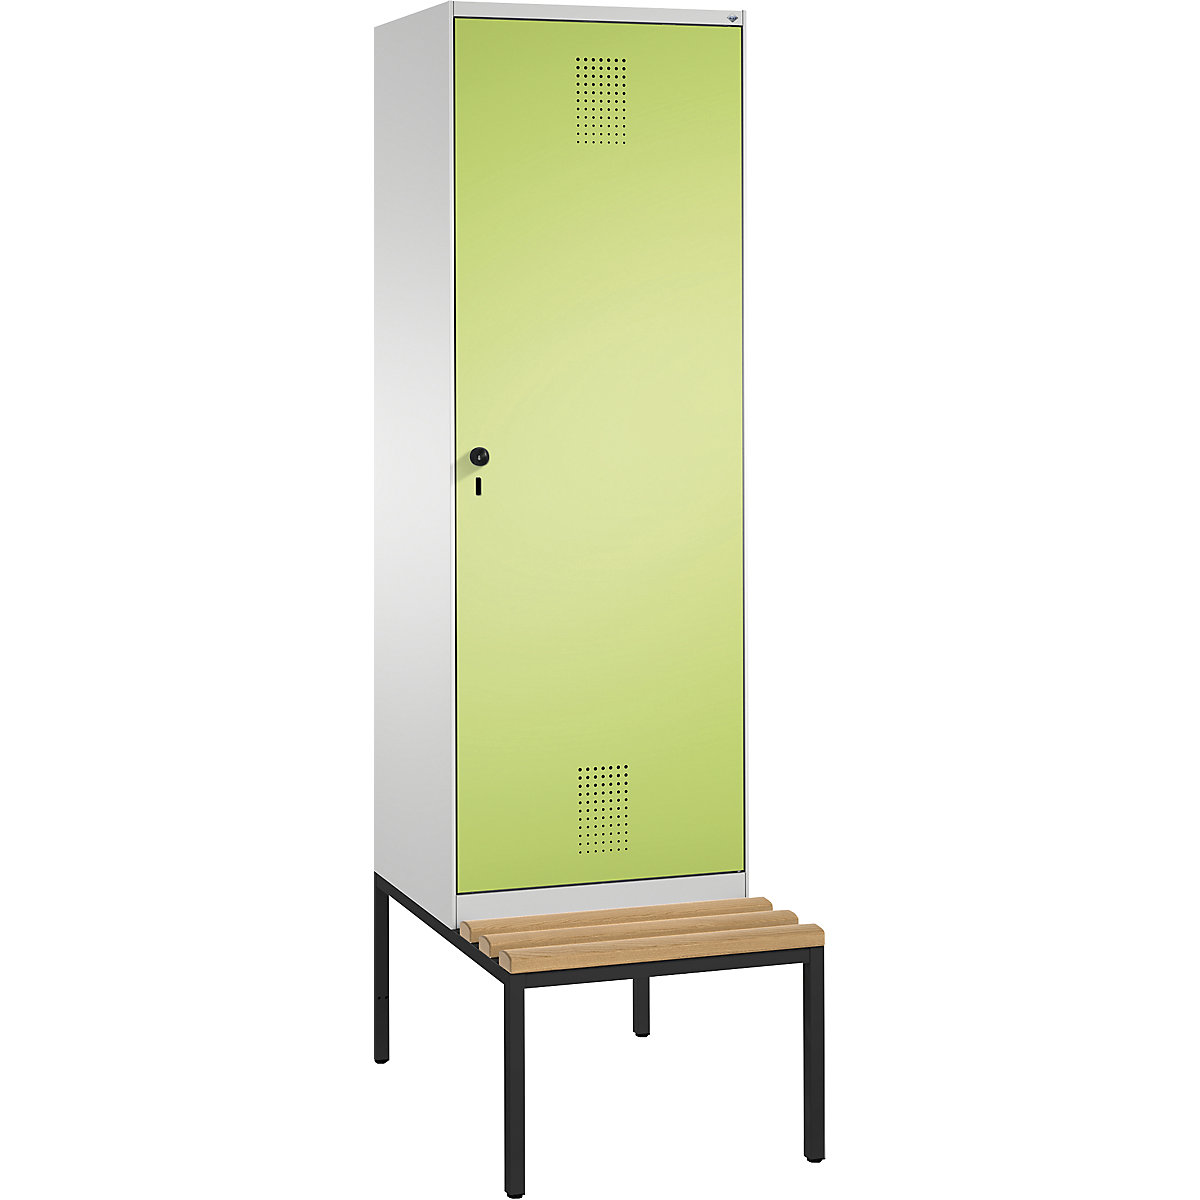 EVOLO cloakroom locker, with bench, door for 2 compartments – C+P, 2 compartments, 1 door, compartment width 300 mm, light grey / viridian green-10